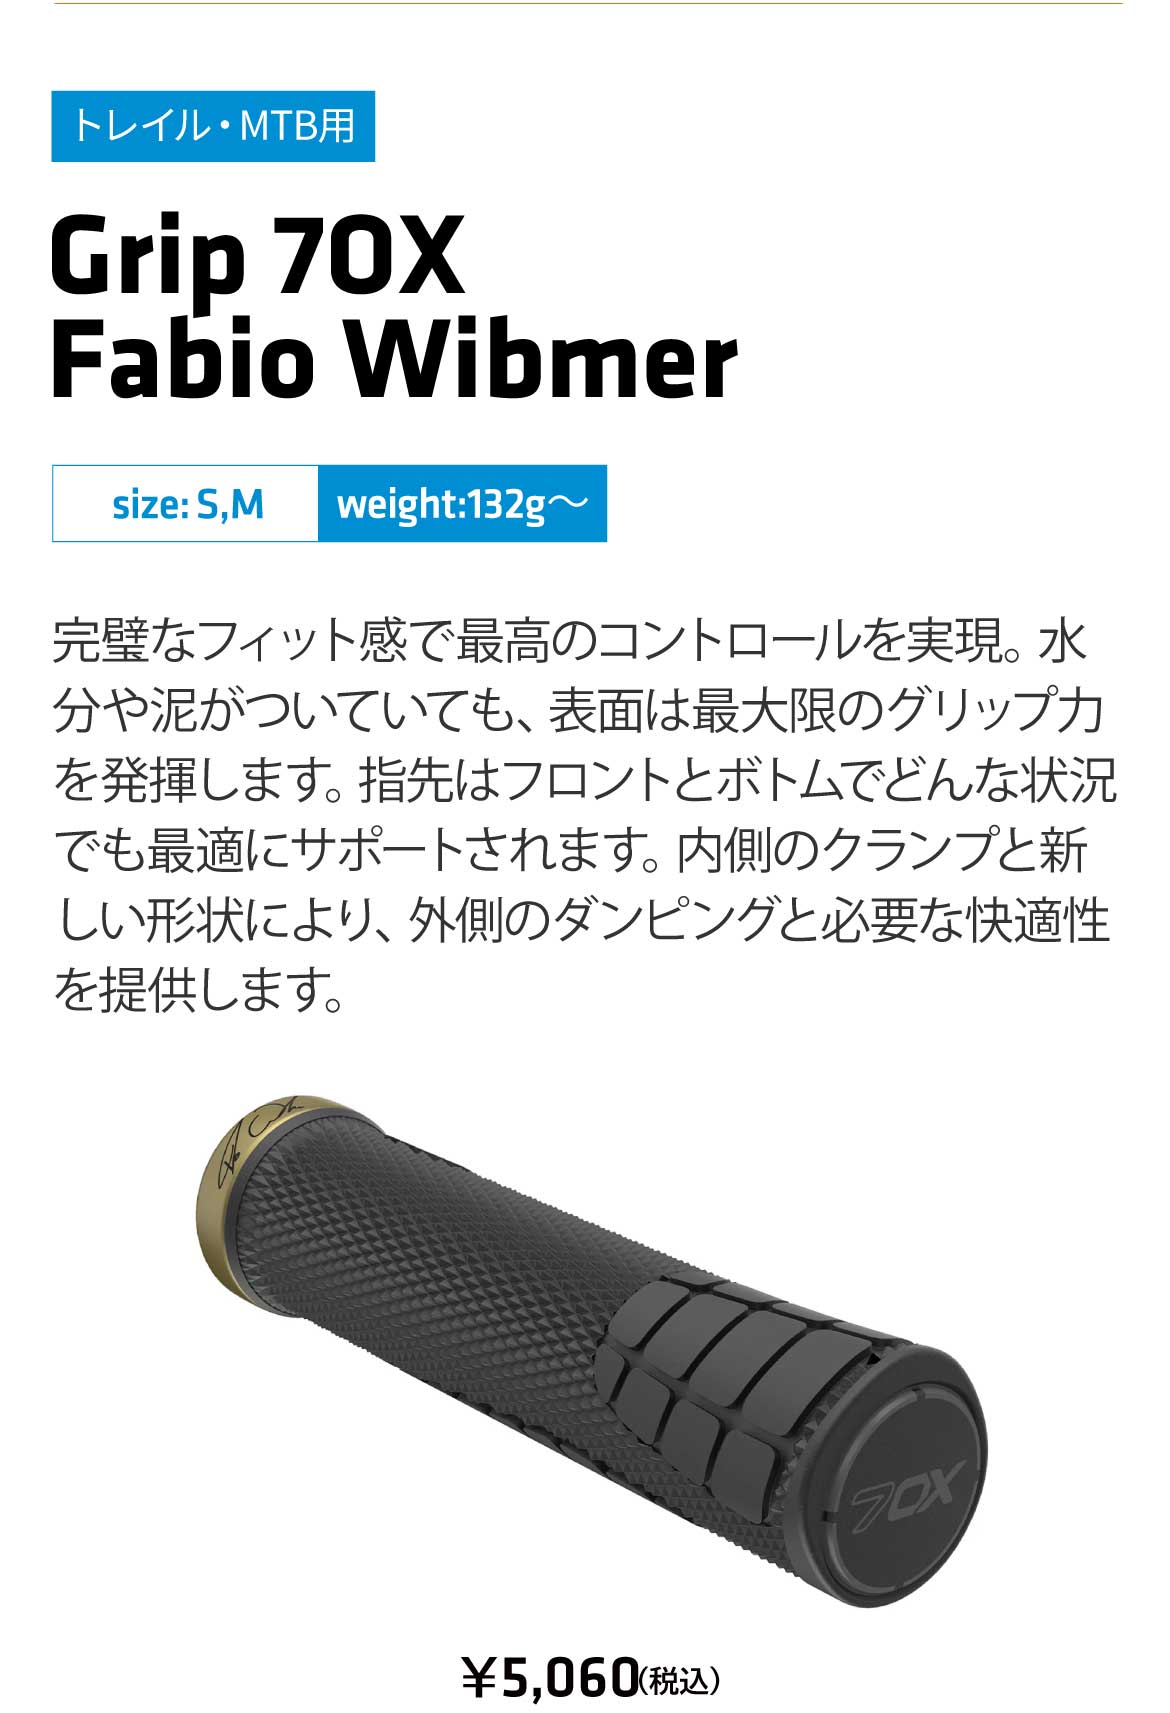 SQlab Grip Fabio Wibmer 7Ox